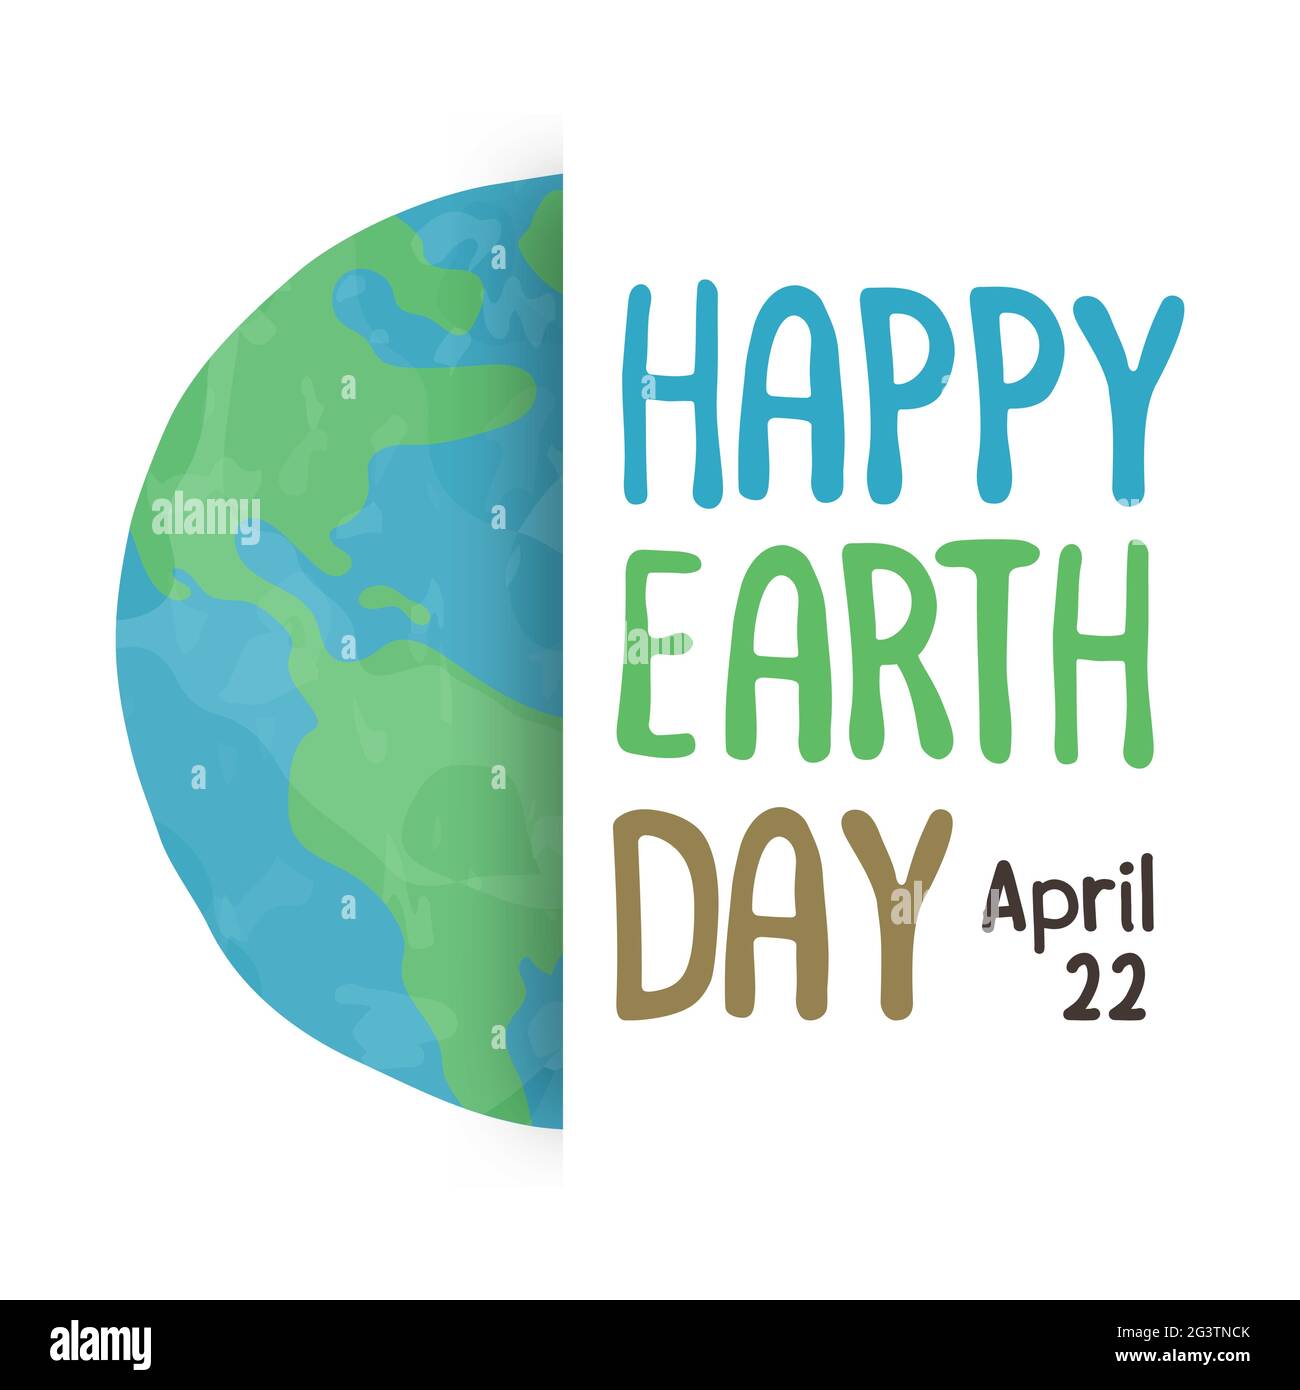 Happy Earth Day Lettering Grußkarte Illustration der grünen Aquarell-Welt mit Typografie Zitat. Banner für den Umwelturlaub im april 22. Stock Vektor